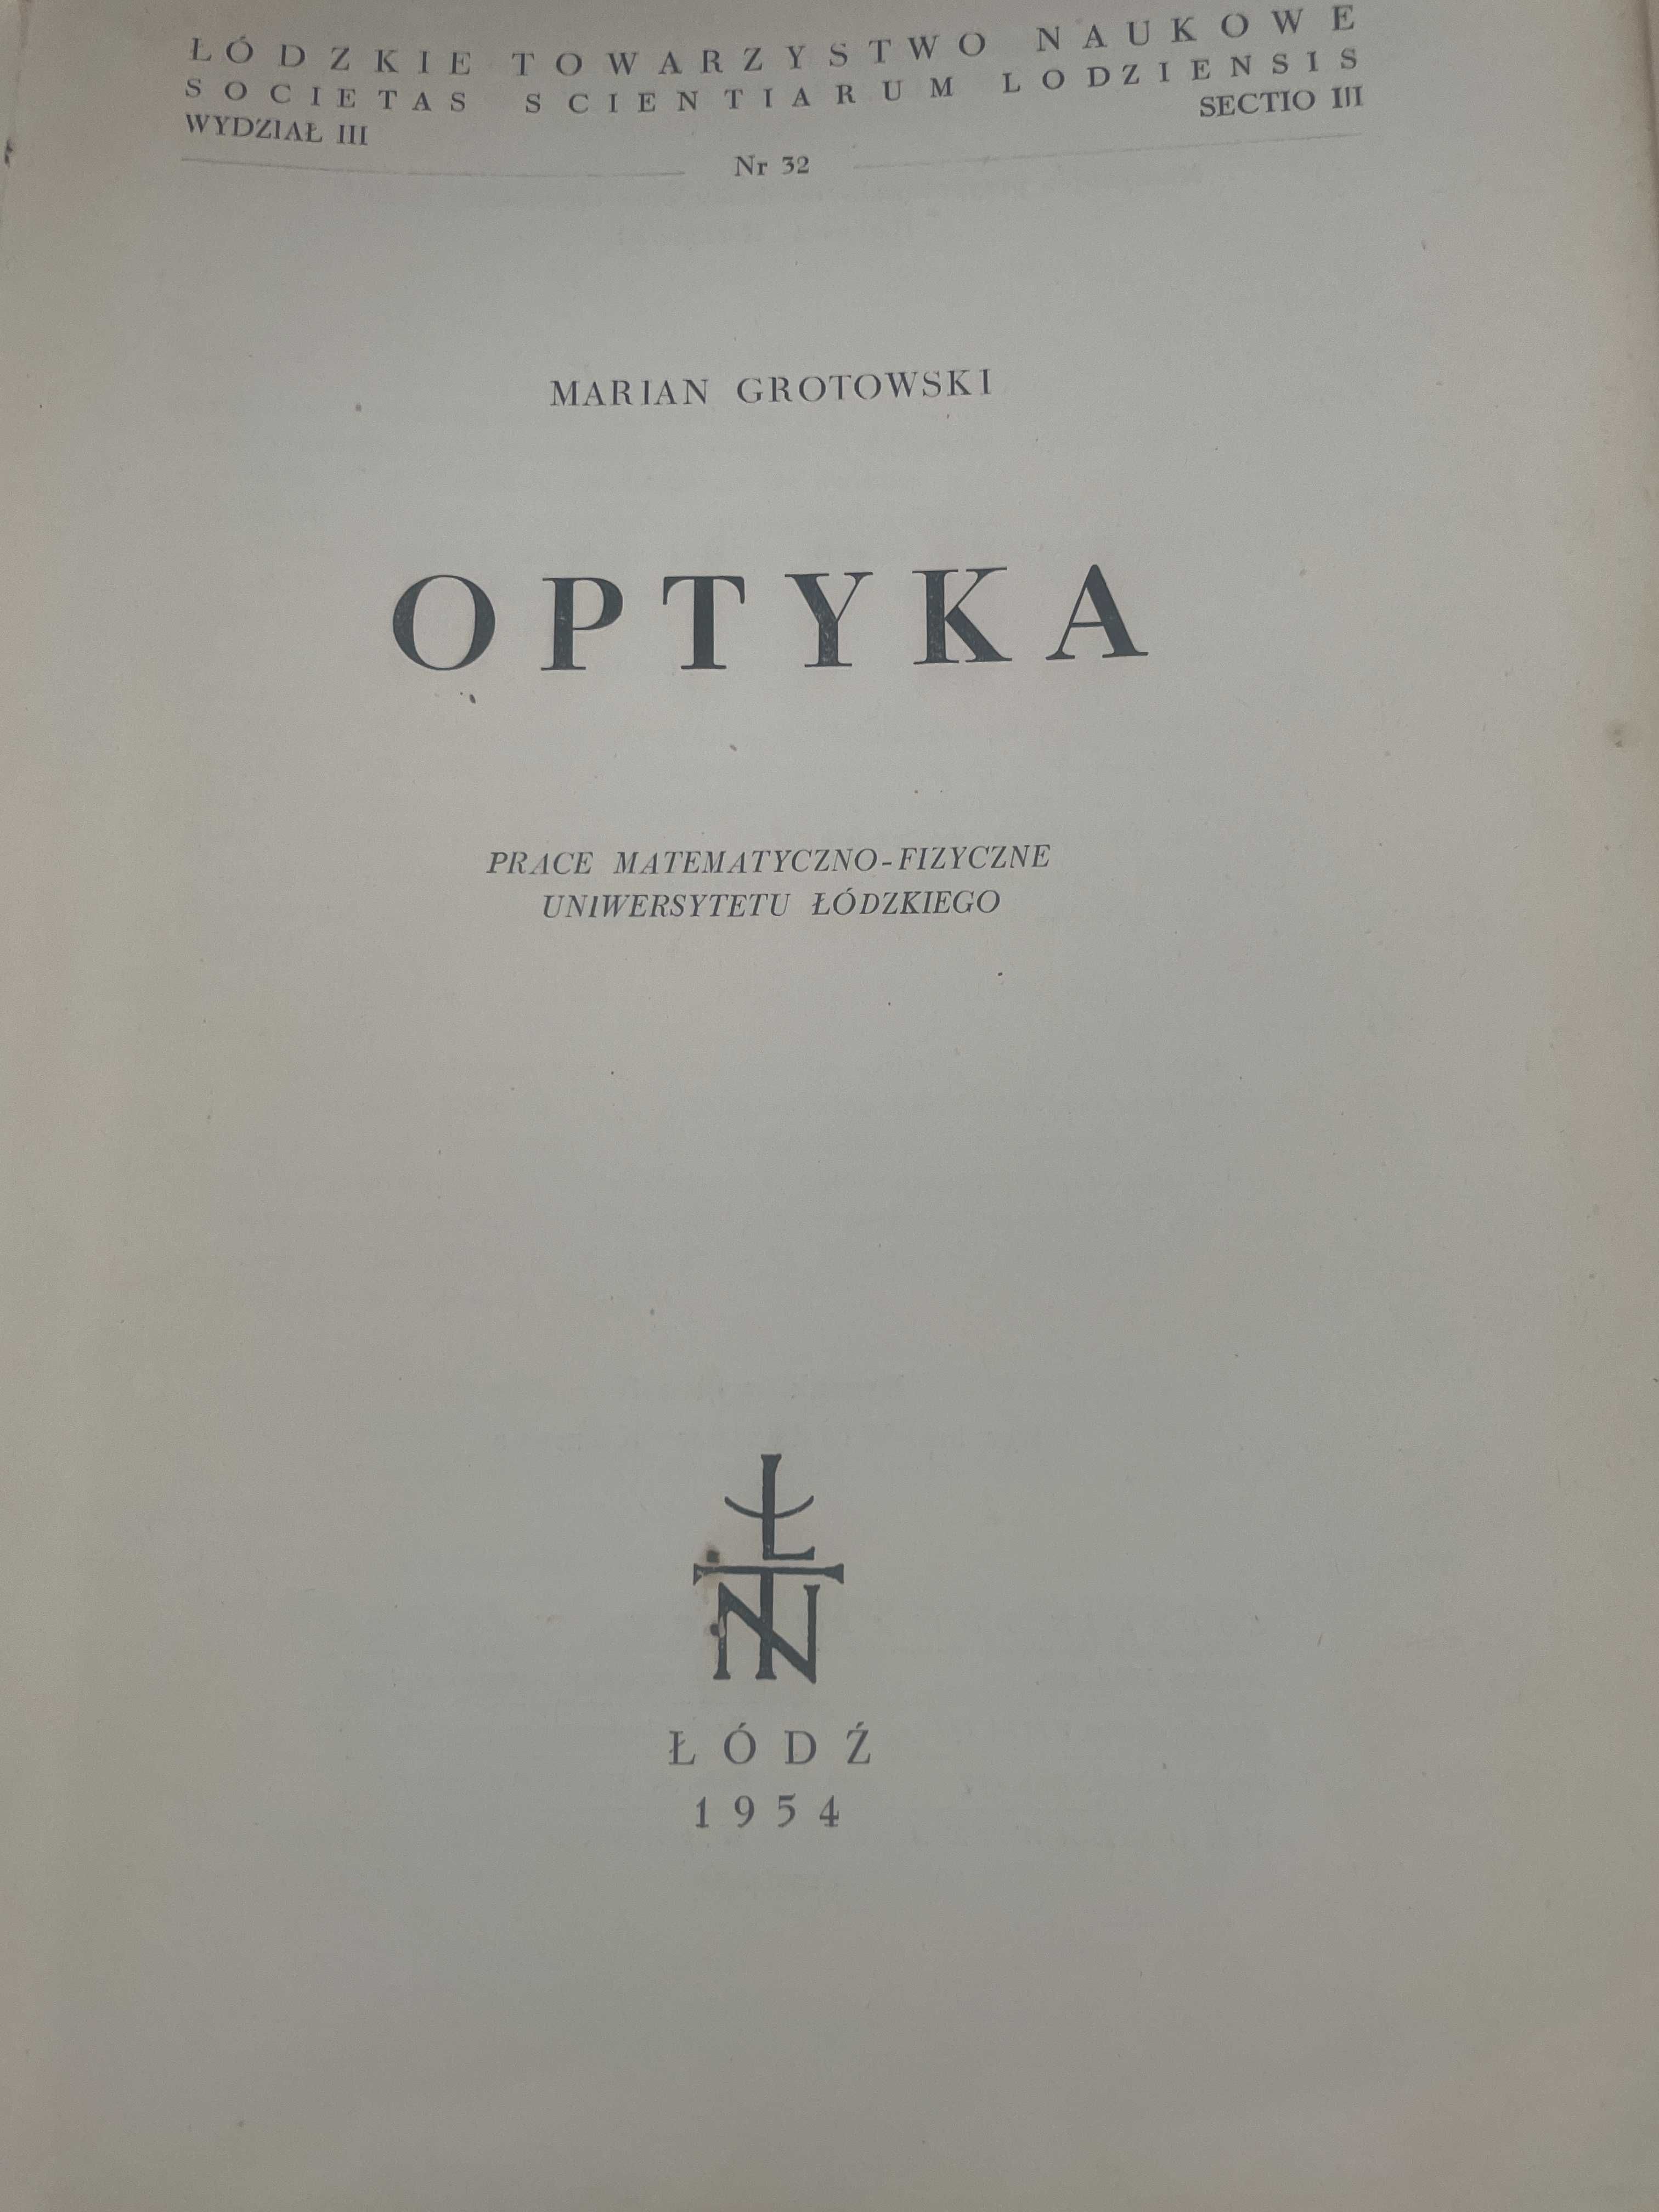 Optyka prace matematyczno-fizyczne Marian Grotowski 1954 r